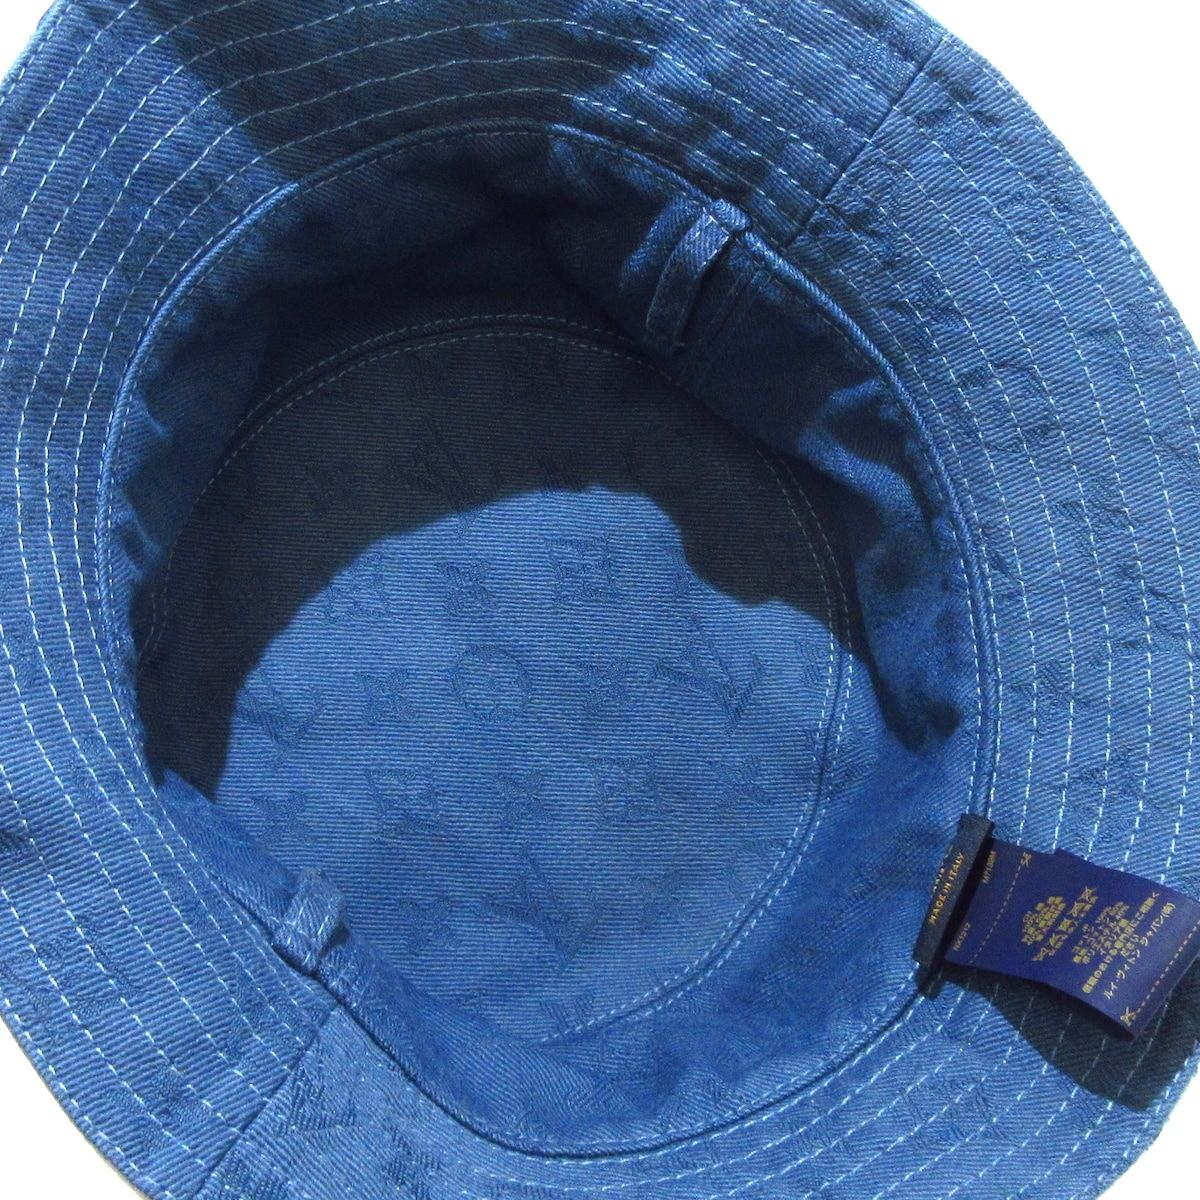 LOUIS VUITTON(ルイヴィトン) 帽子美品 バケットハット・LV プレイ M7139M 白×ネイビー×ブルーグリーン 帽子 (その他)  コットン